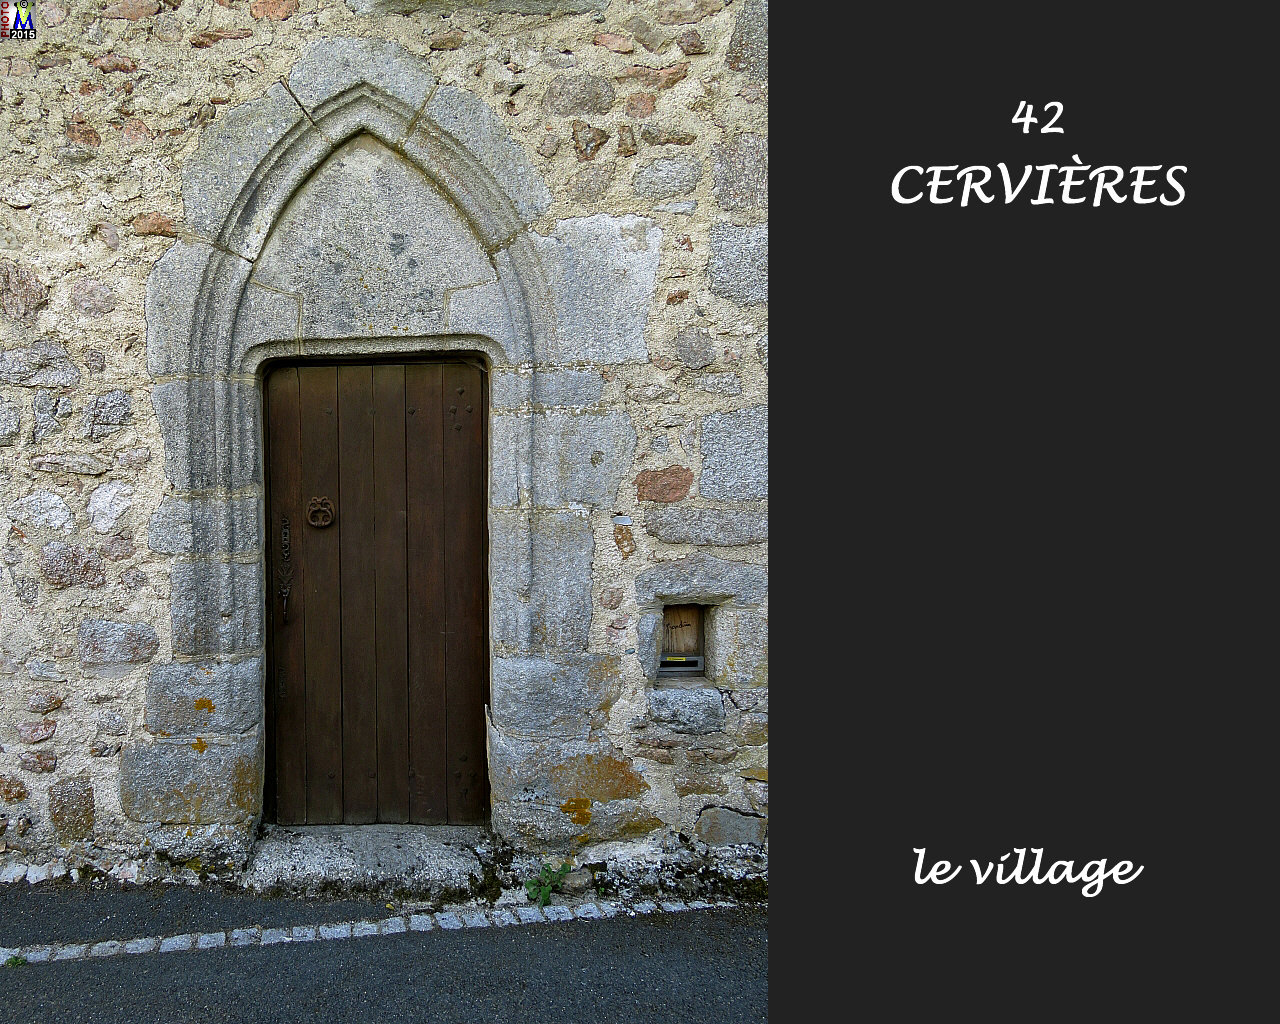 42CERVIERES_village_150.jpg